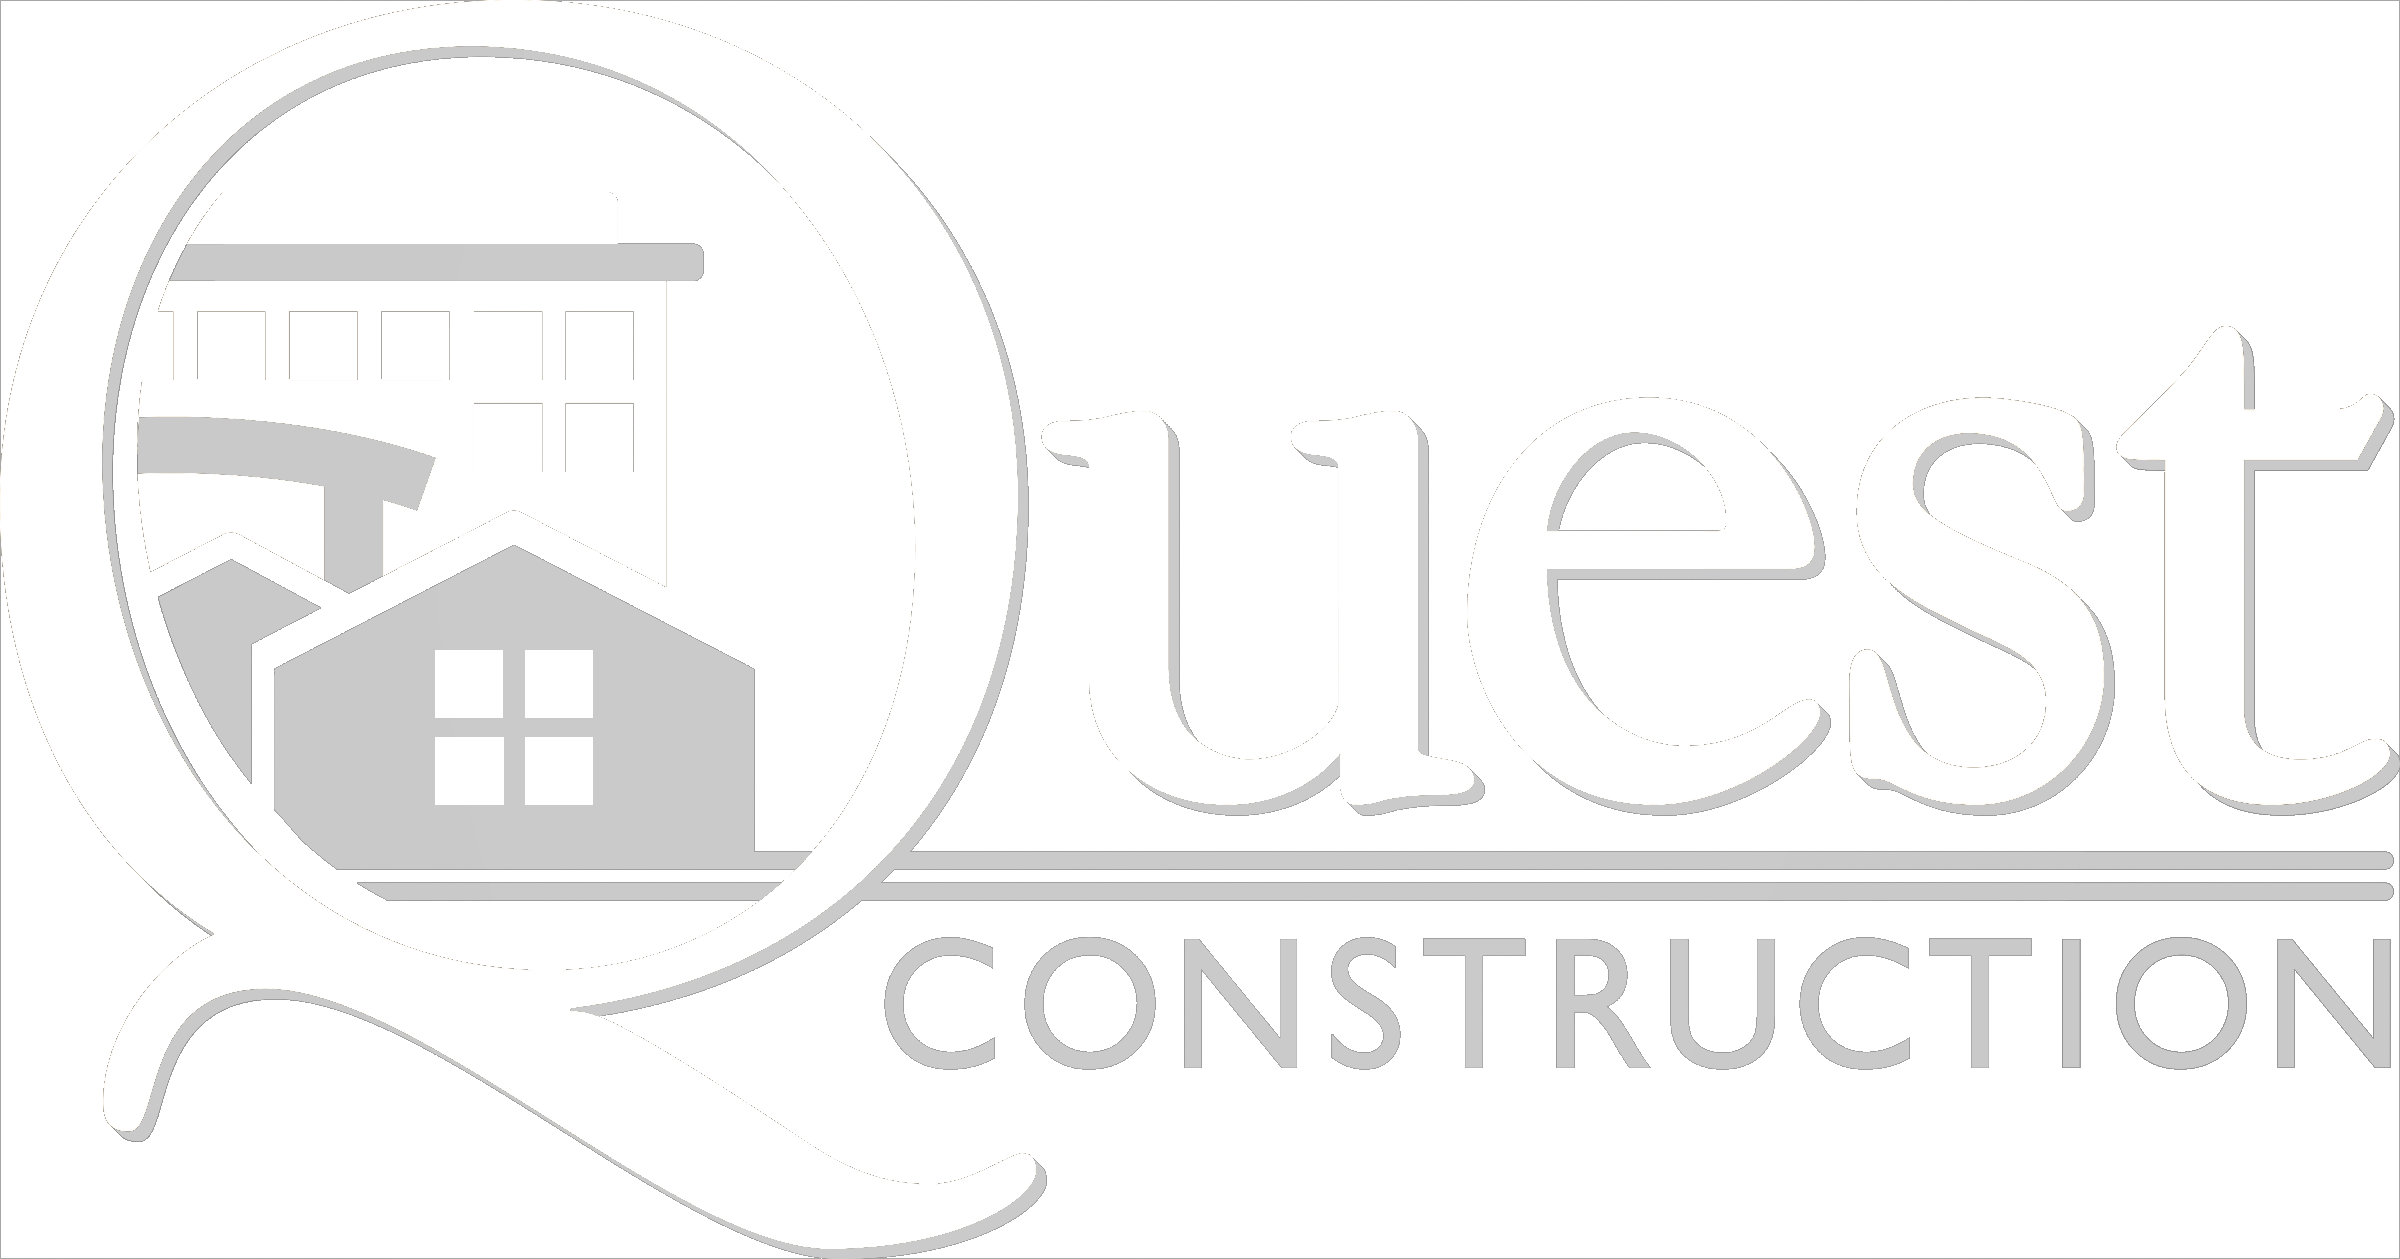 Quest Construction